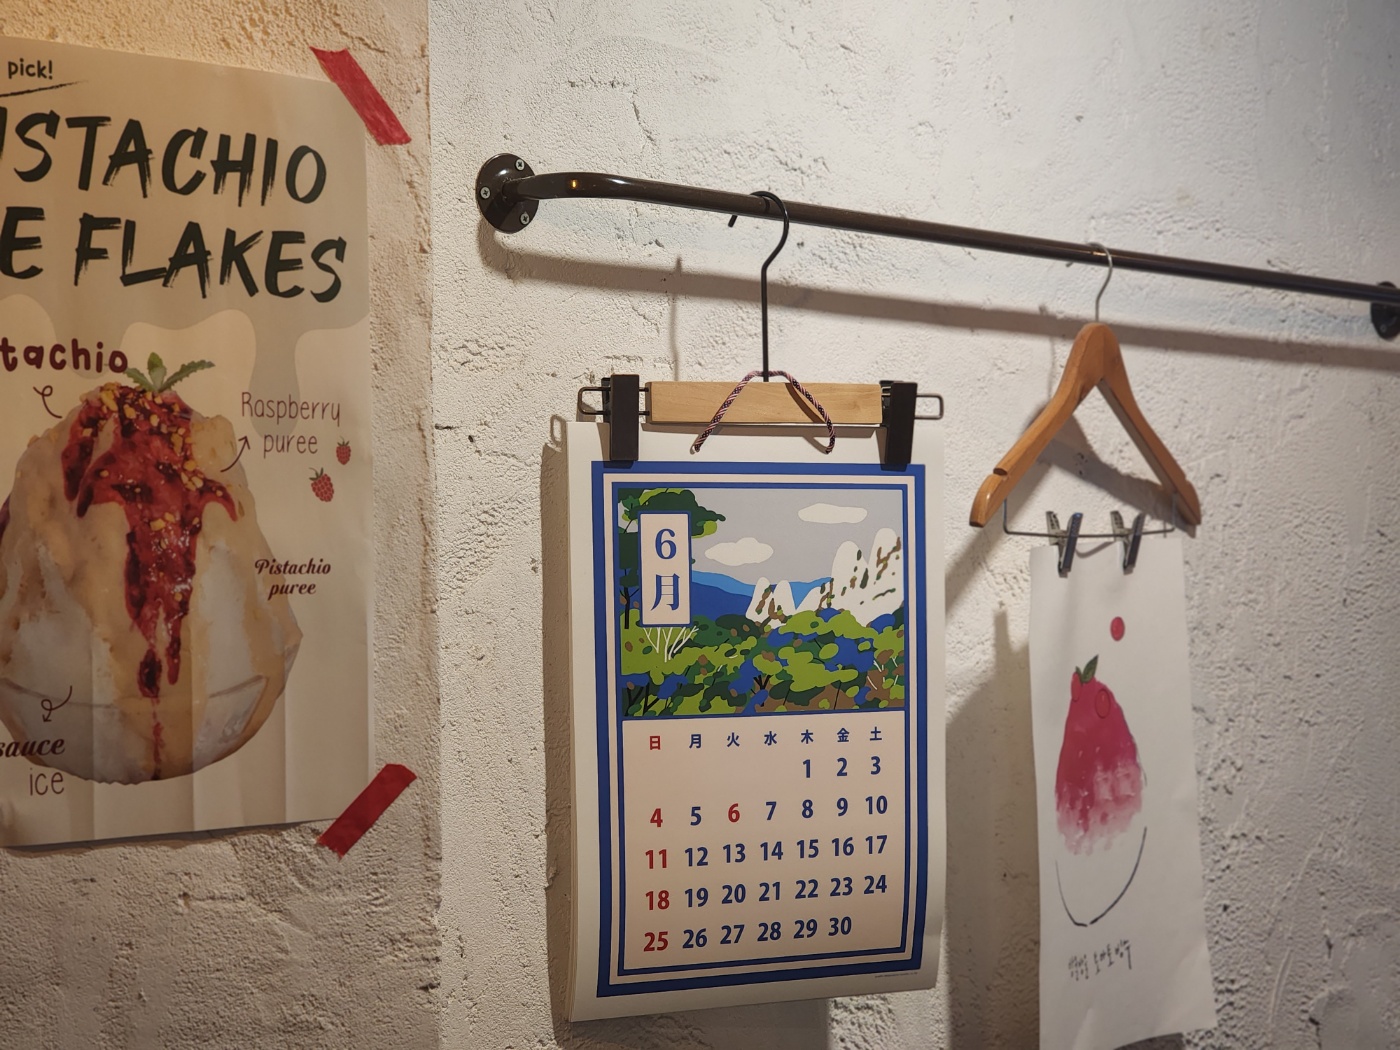 옷걸이 집게에 걸려 있는 6월 일러스트 달력과 방울 방울 토마토 빙수 일러스트 포스터